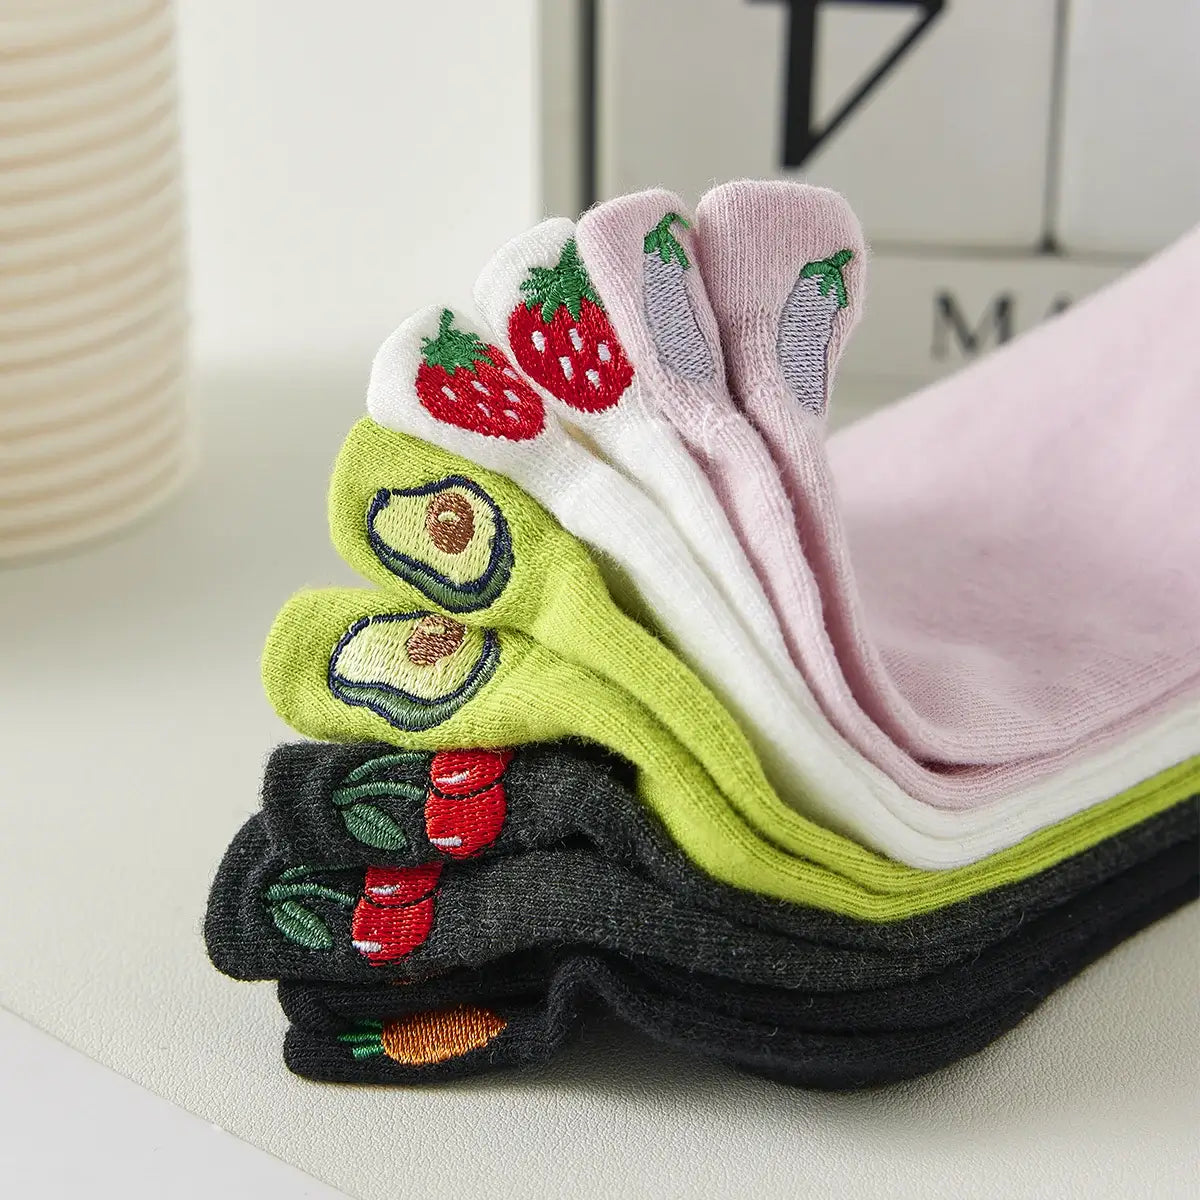 Socquettes invisibles en coton écologique fabriquées en France